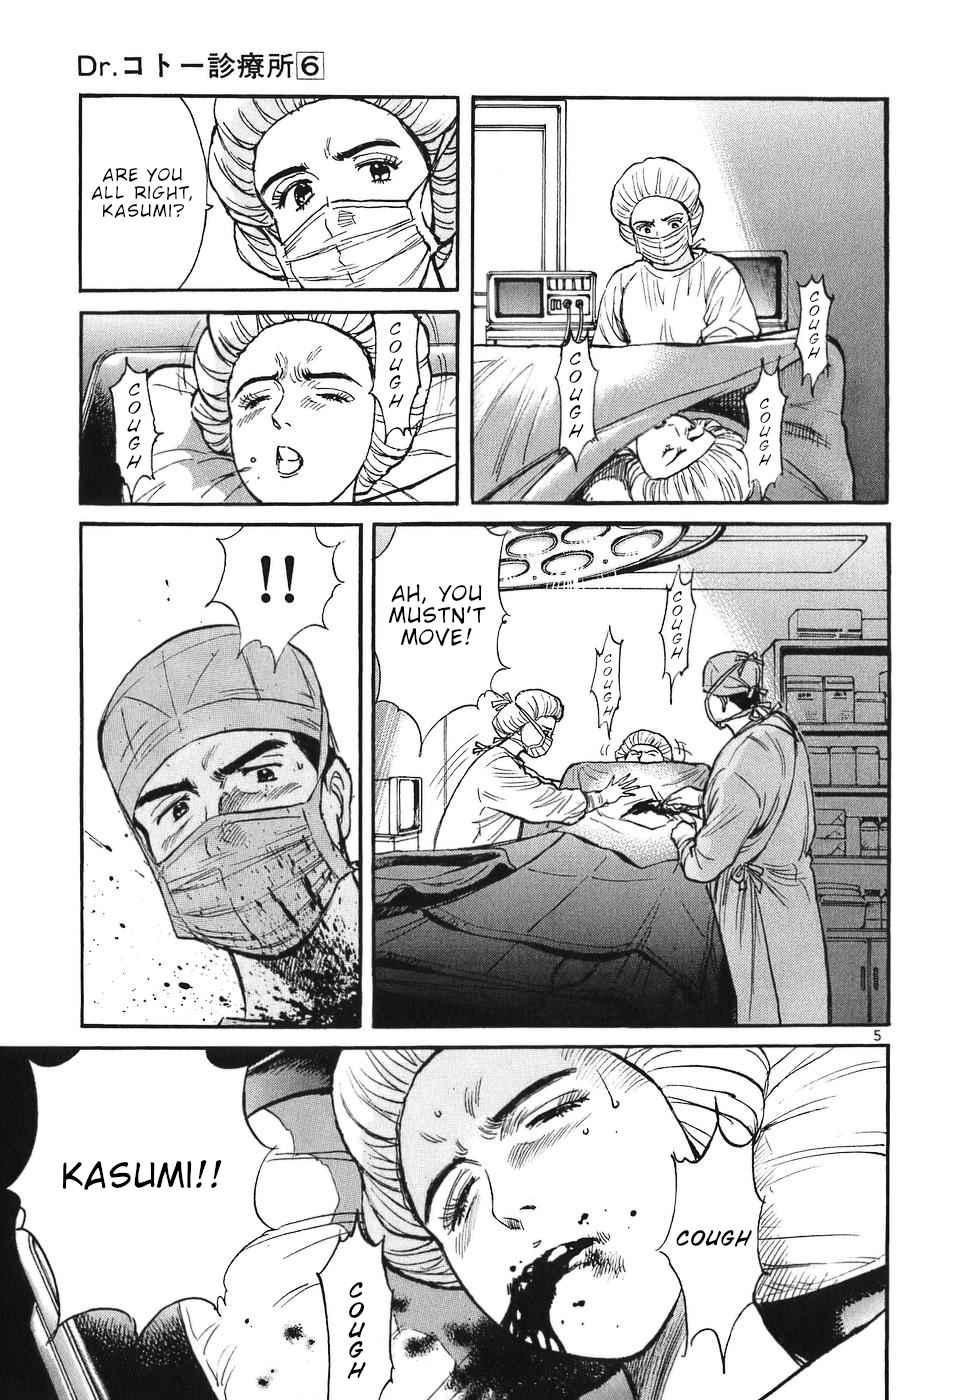 Dr. Koto Shinryoujo Vol. 6 Ch. 65 Dr. Koto Finds a Way Through